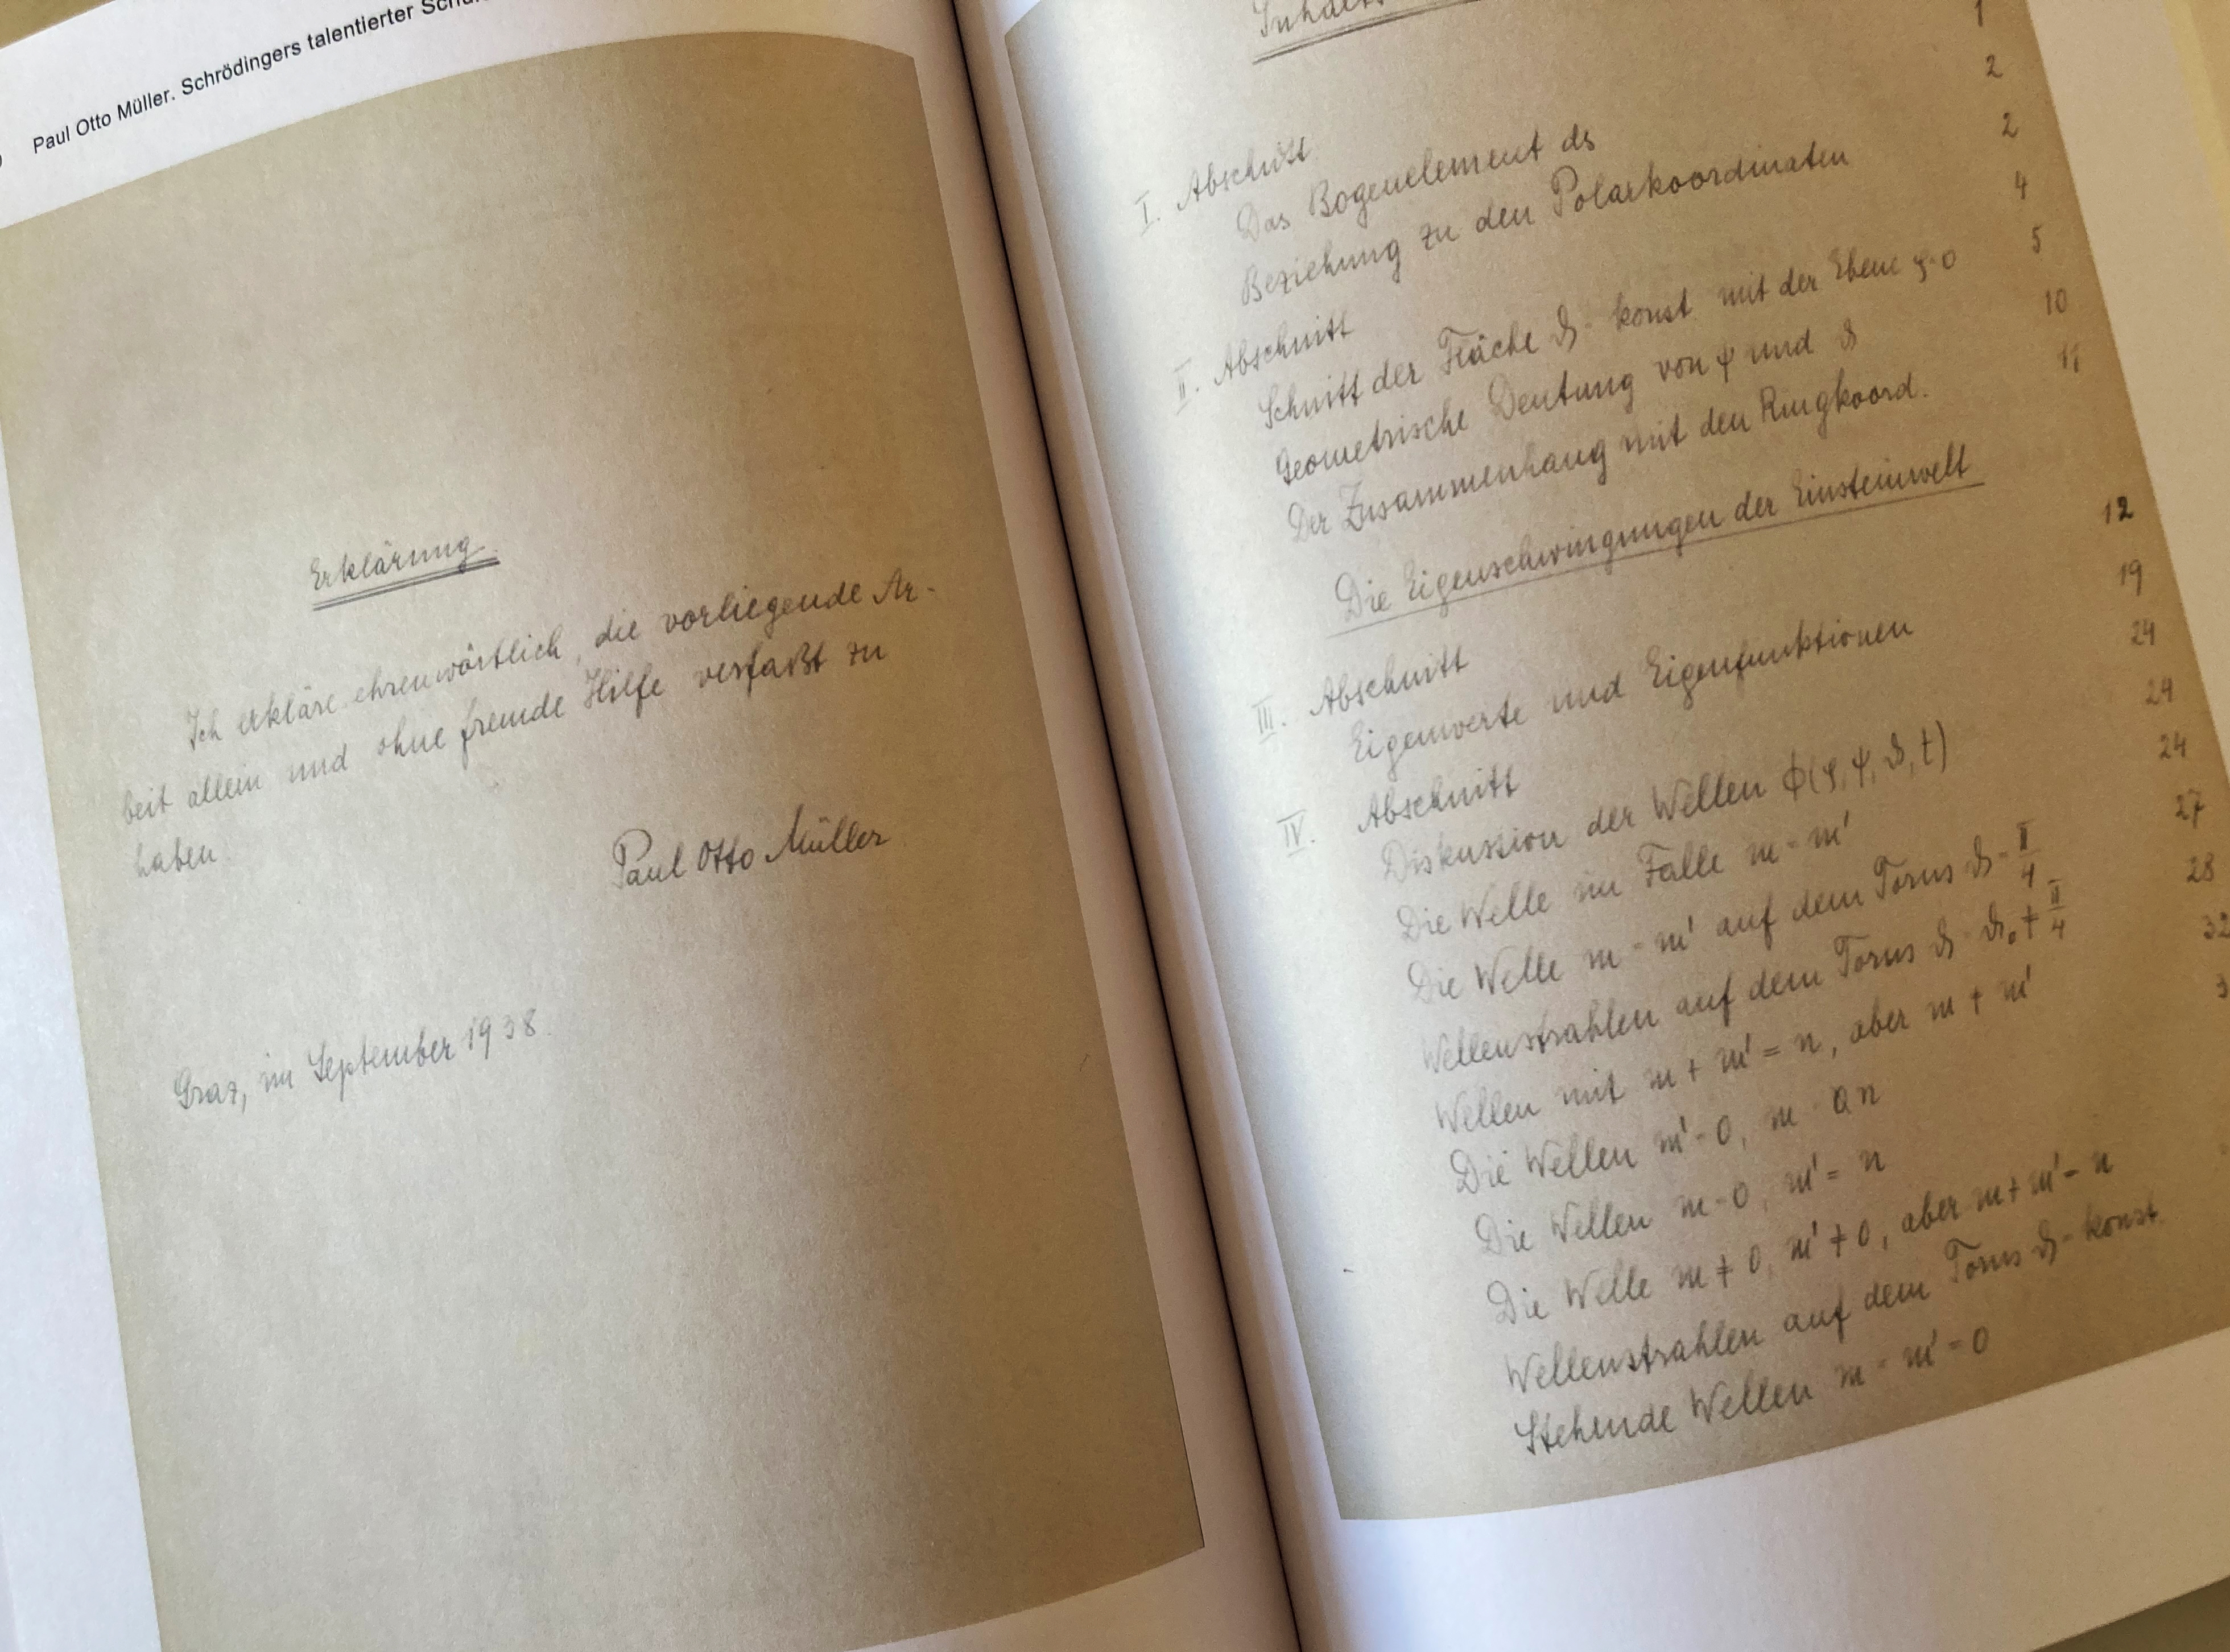 Blick ins Buch: die handschriftlich verfasste Dissertation von Paul Otto Müller Foto: Uni Graz/Schweiger 